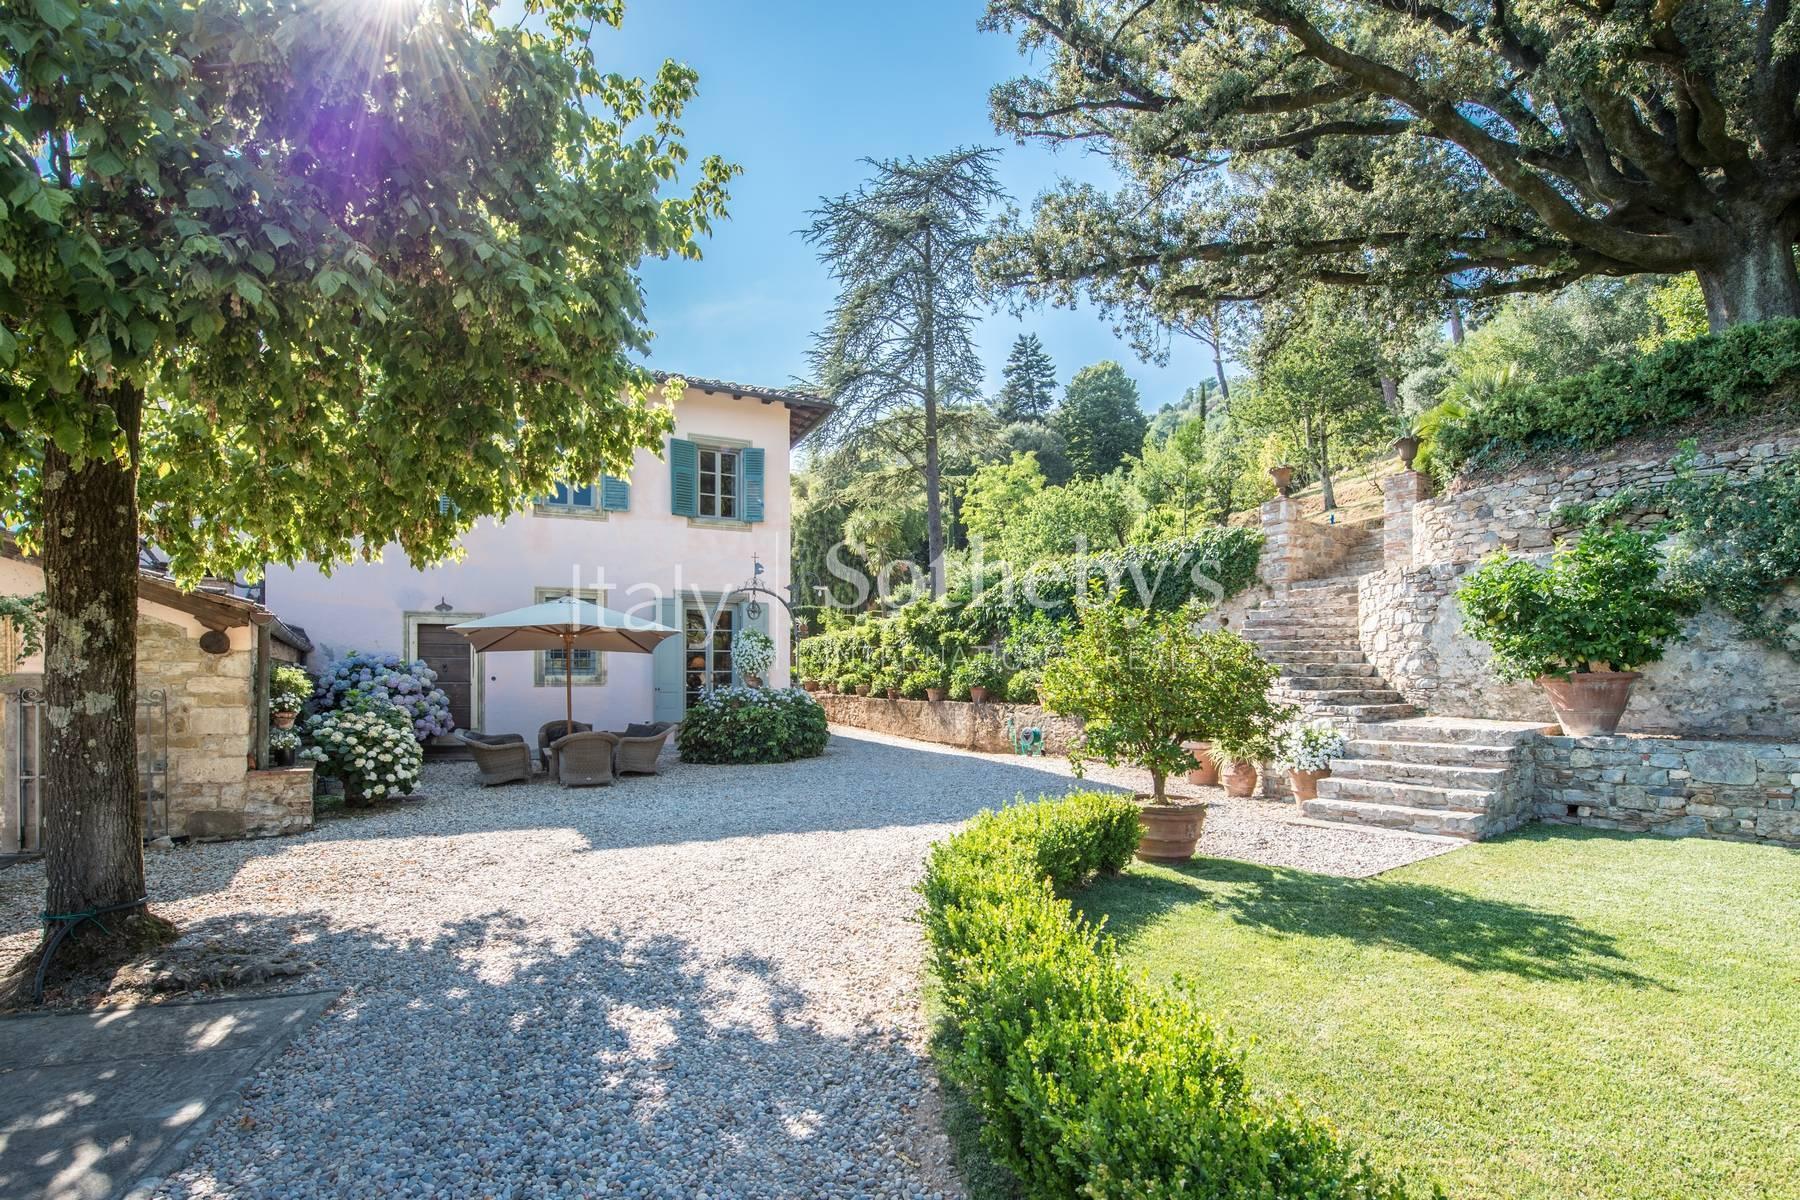 Splendida villa del 1700 nei pressi di Lucca - 3